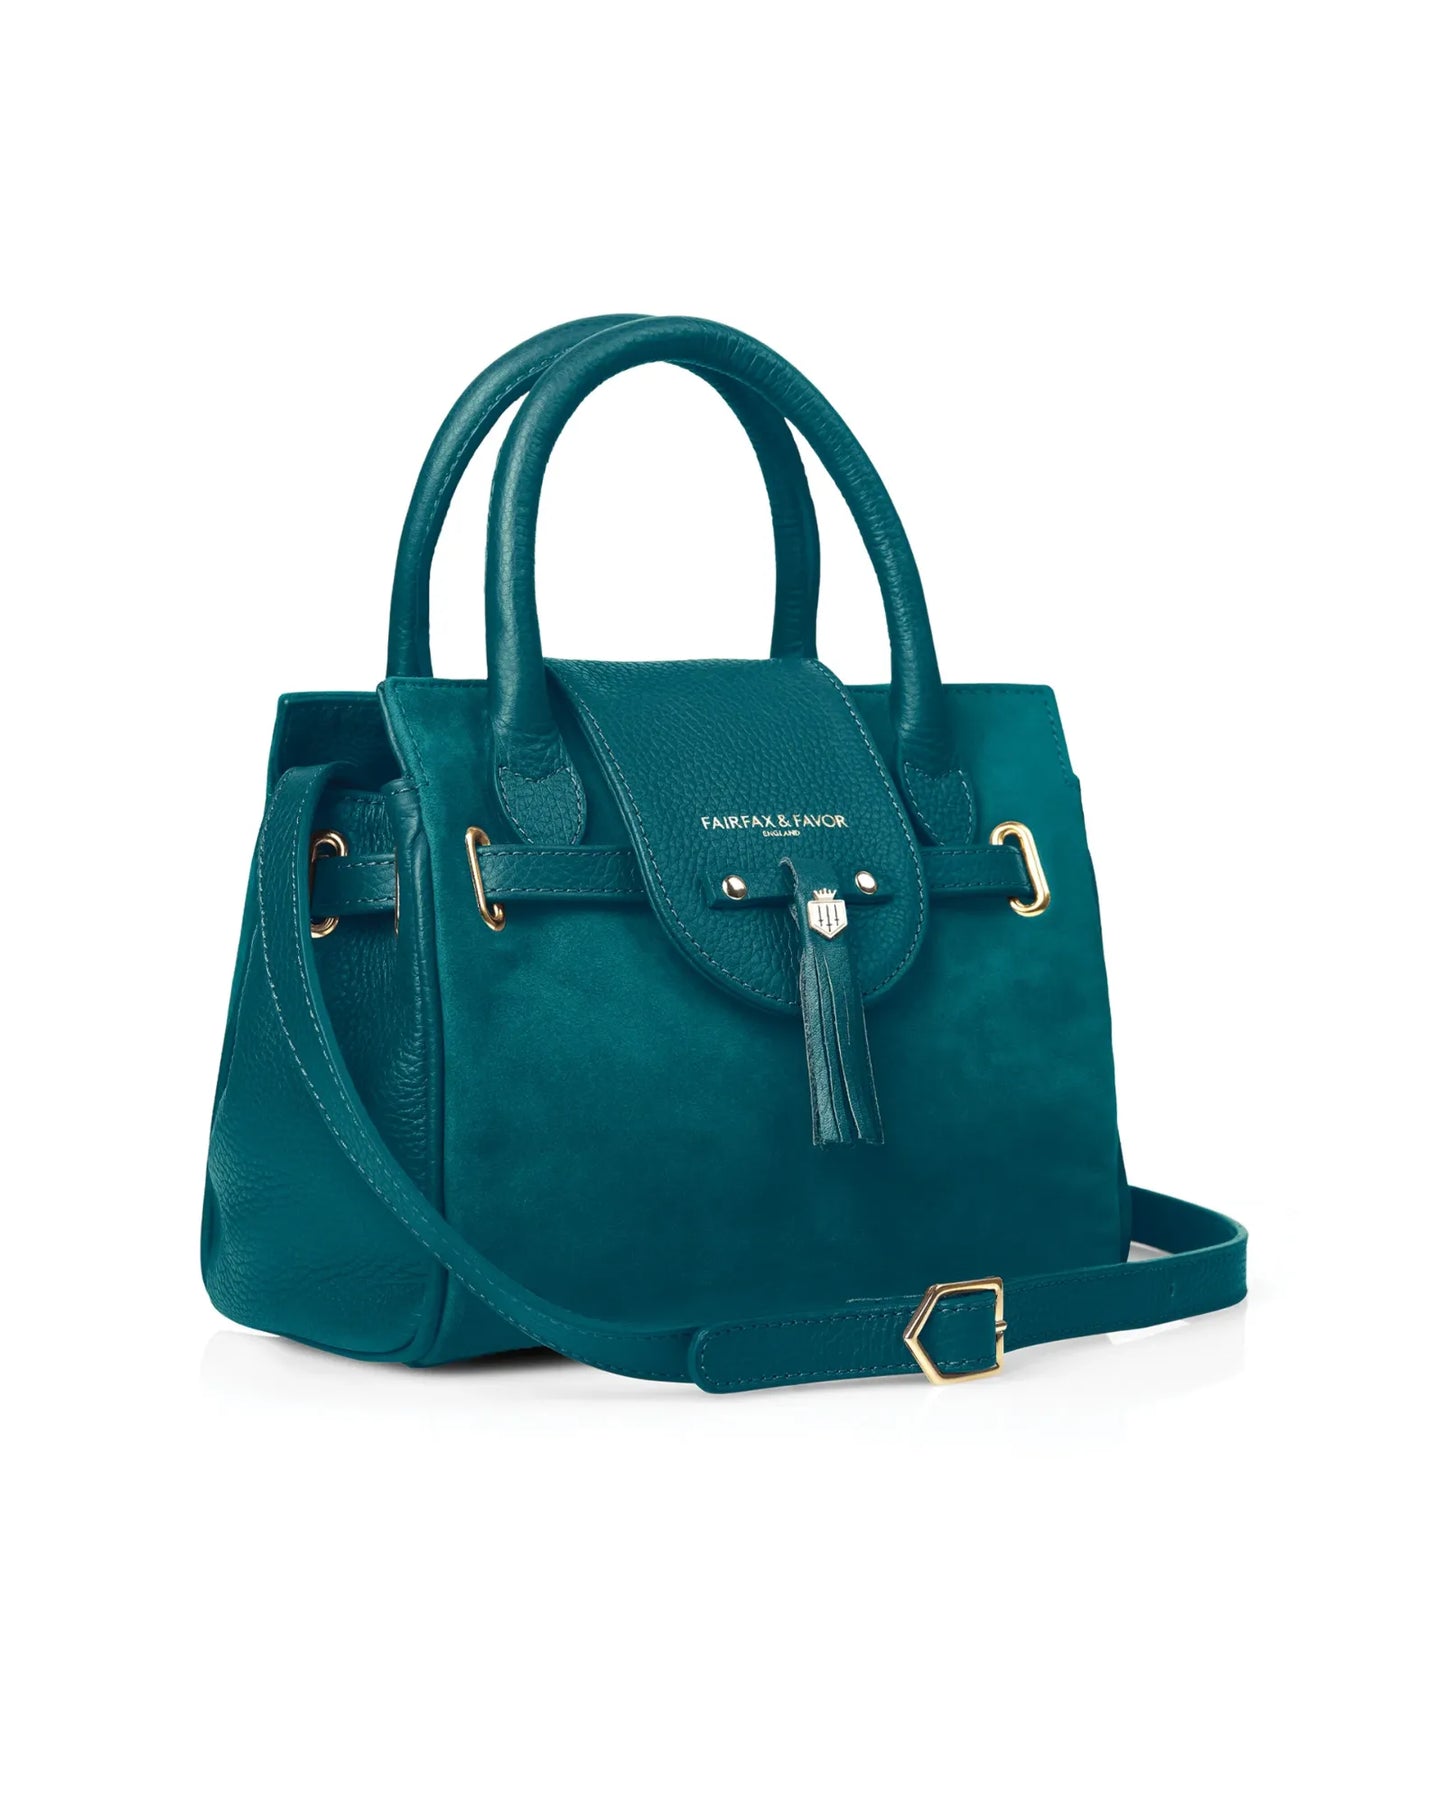 The Mini Windsor Handbag in Ocean Suede (Stockist Exclusive)